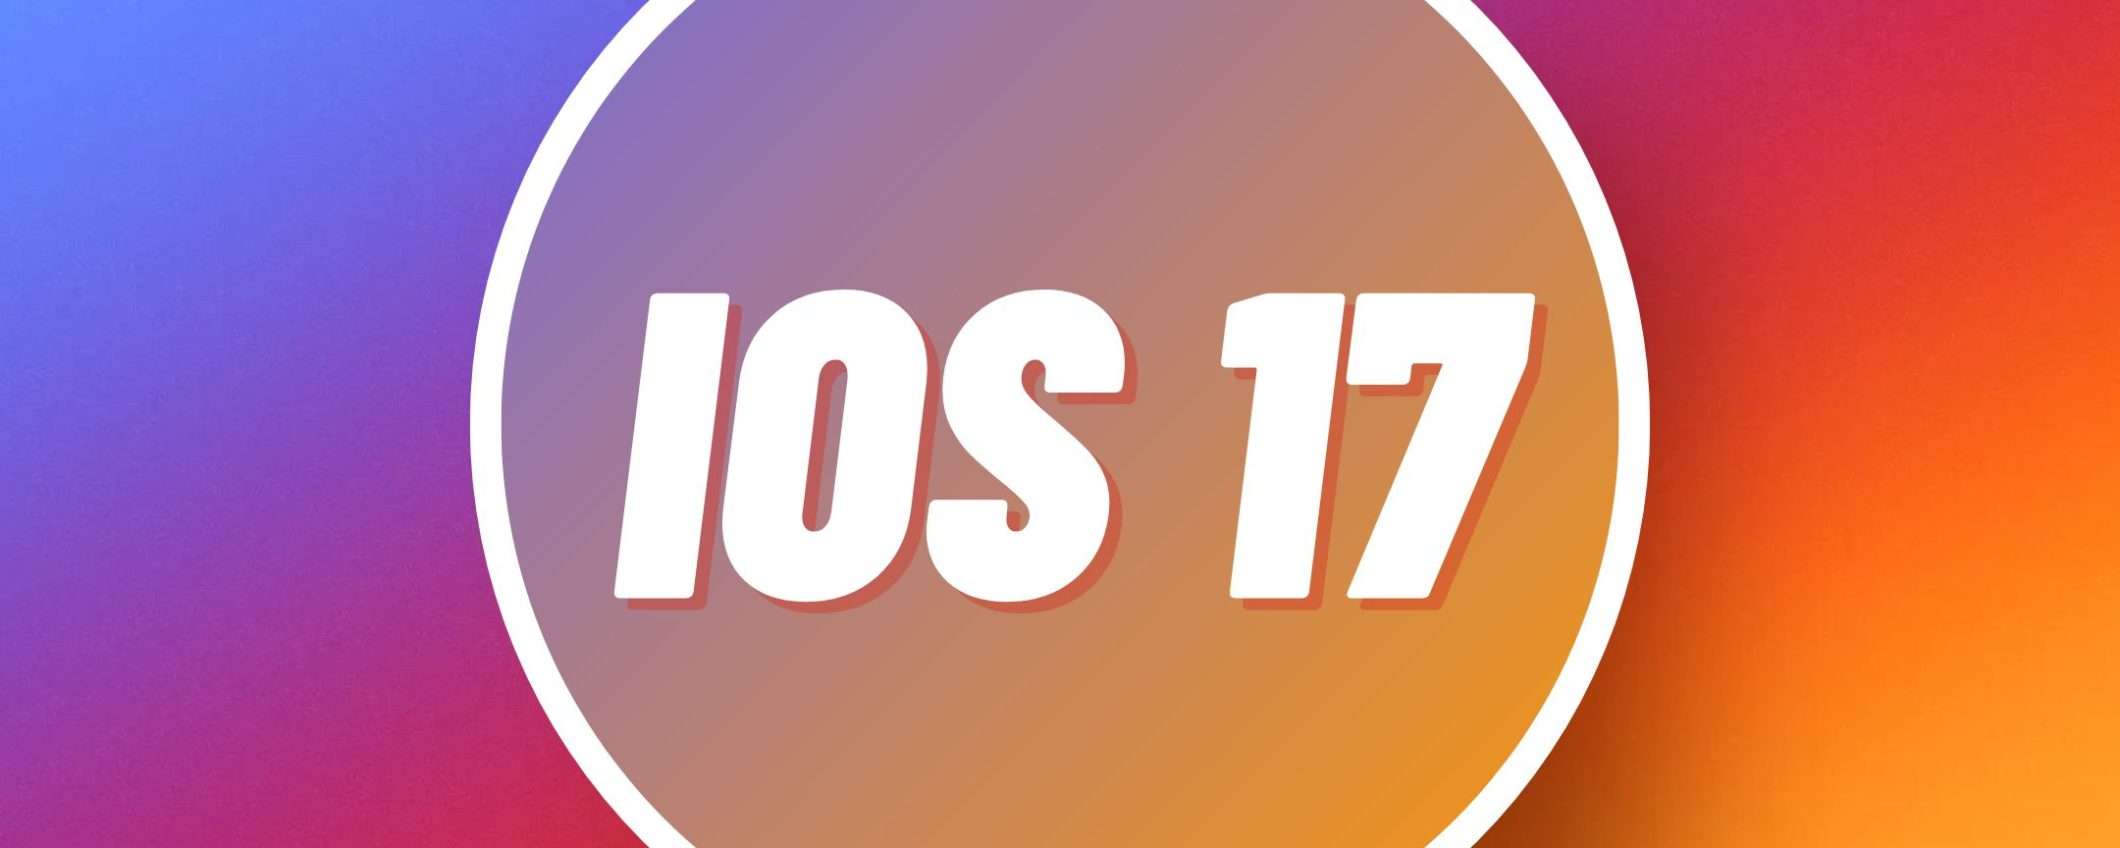 Con iOS 17 arriverà il supporto agli store di app esterni